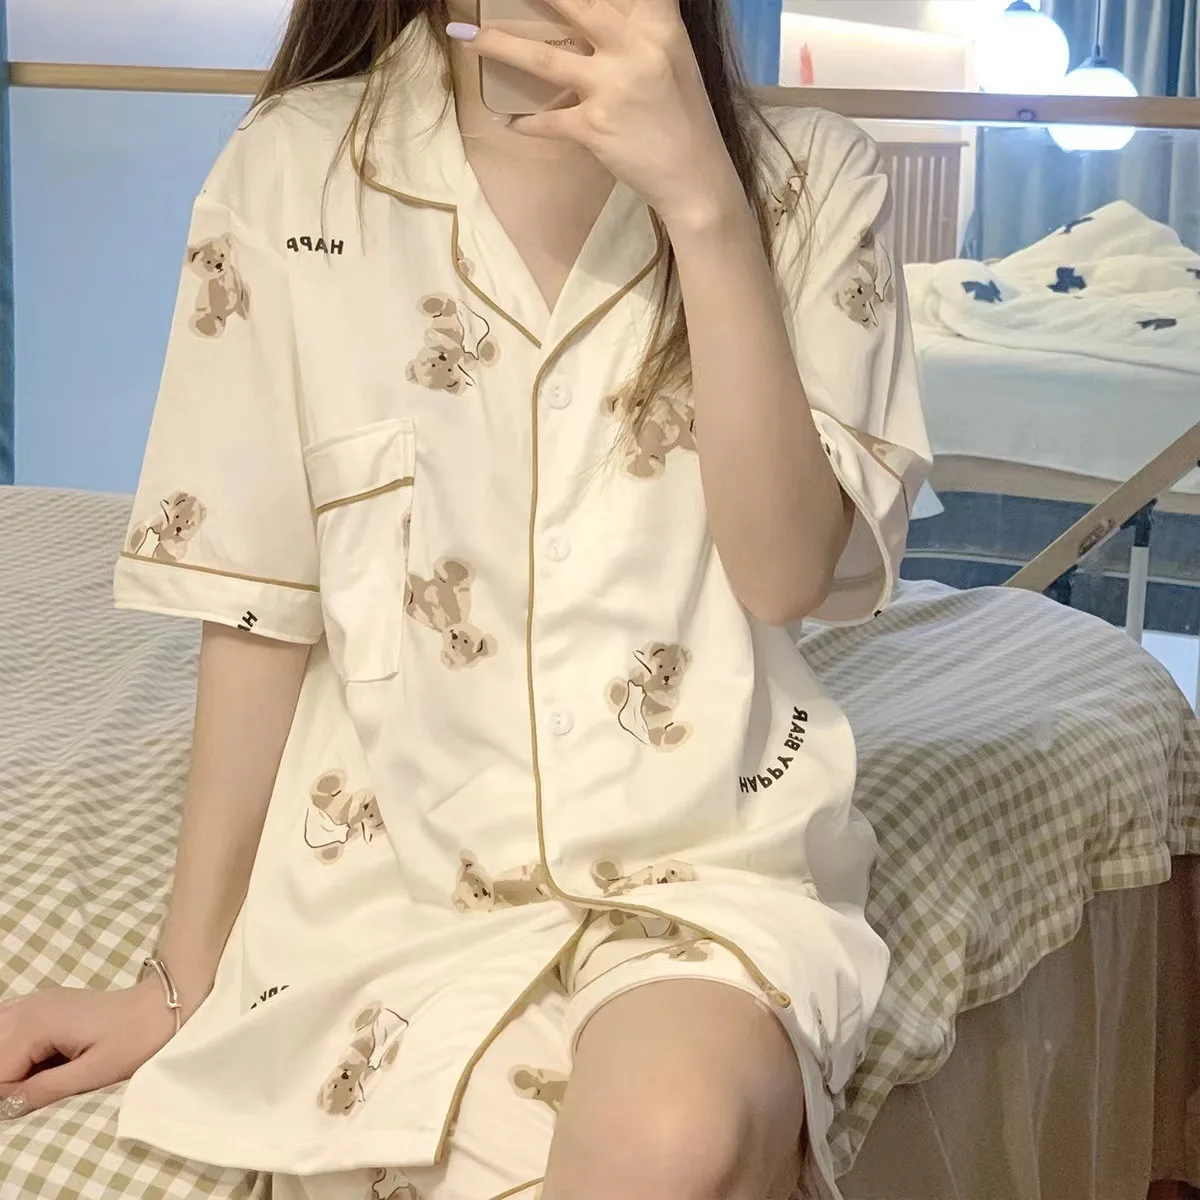 Kore Tarzı Ayı Baskı Pijama Kadın giyim setleri Yaz Sevimli Pijama Genç Kızlar için Kawaii Pijama Pijama